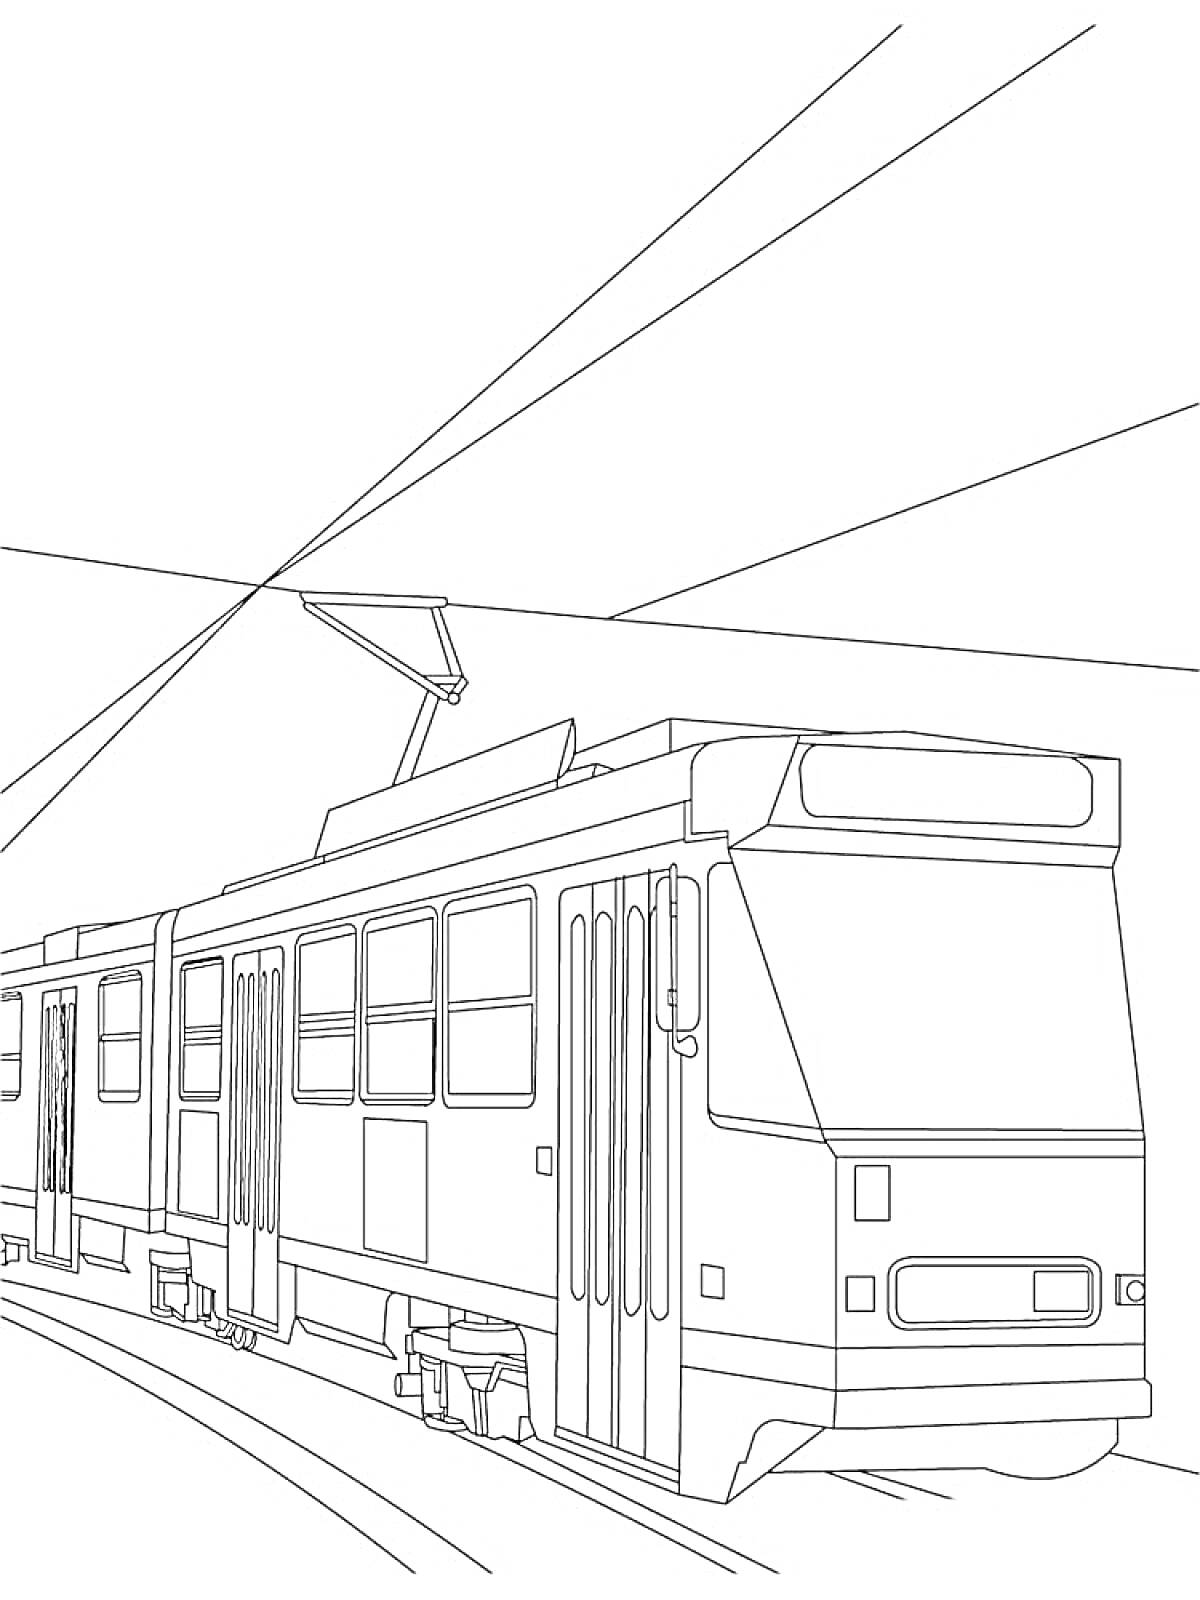 Раскраска Трамвай на рельсах с линиями контактной сети